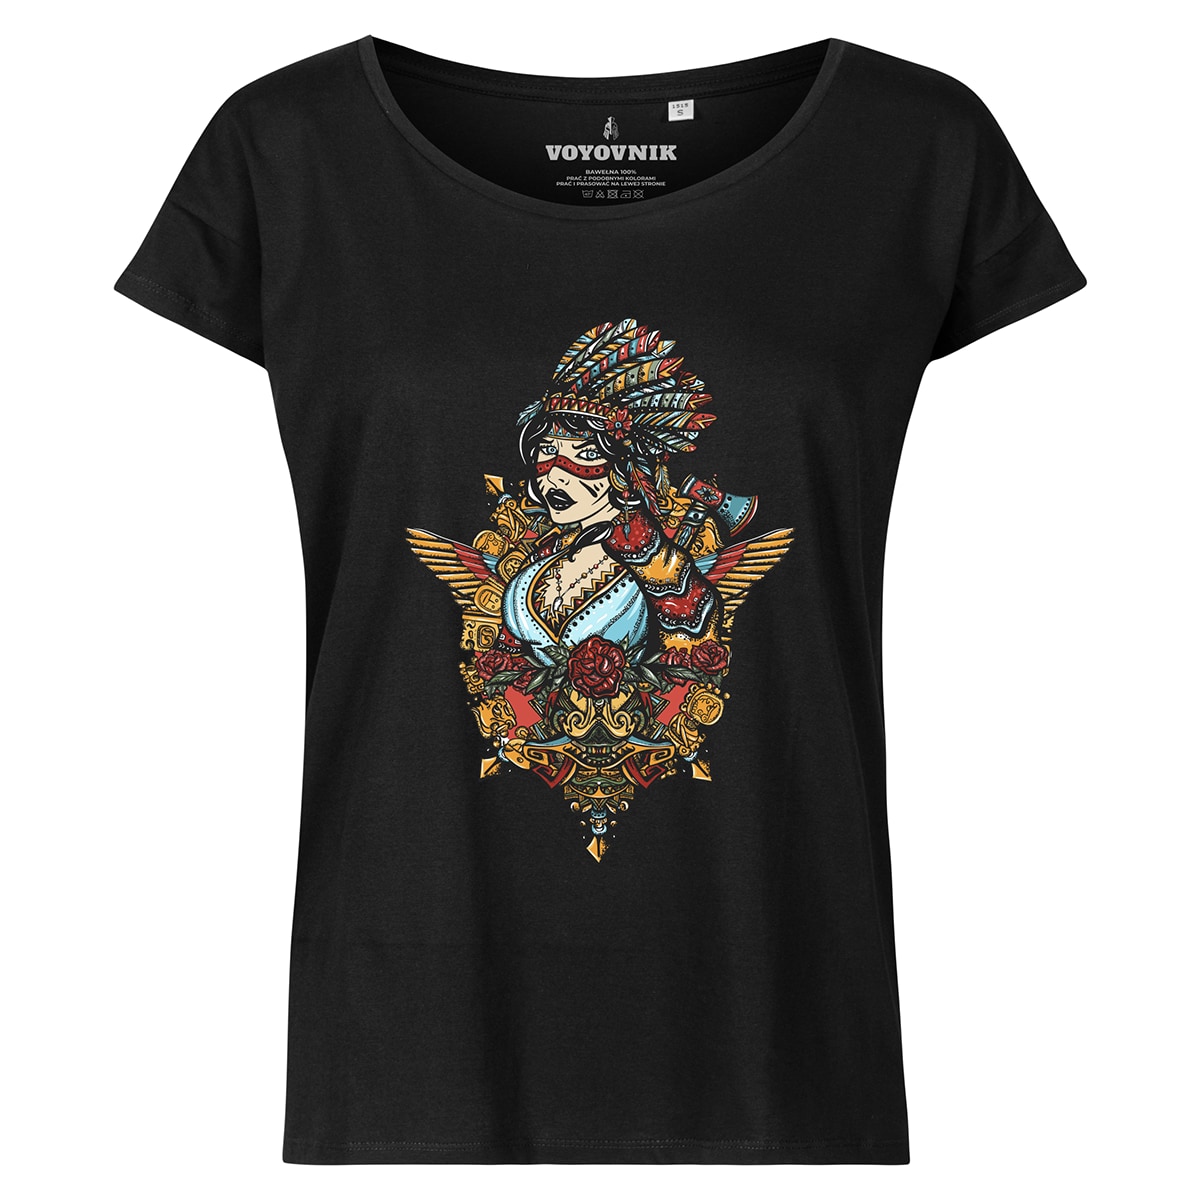 Жіноча футболка Voyovnik Steampunk Chero - чорна